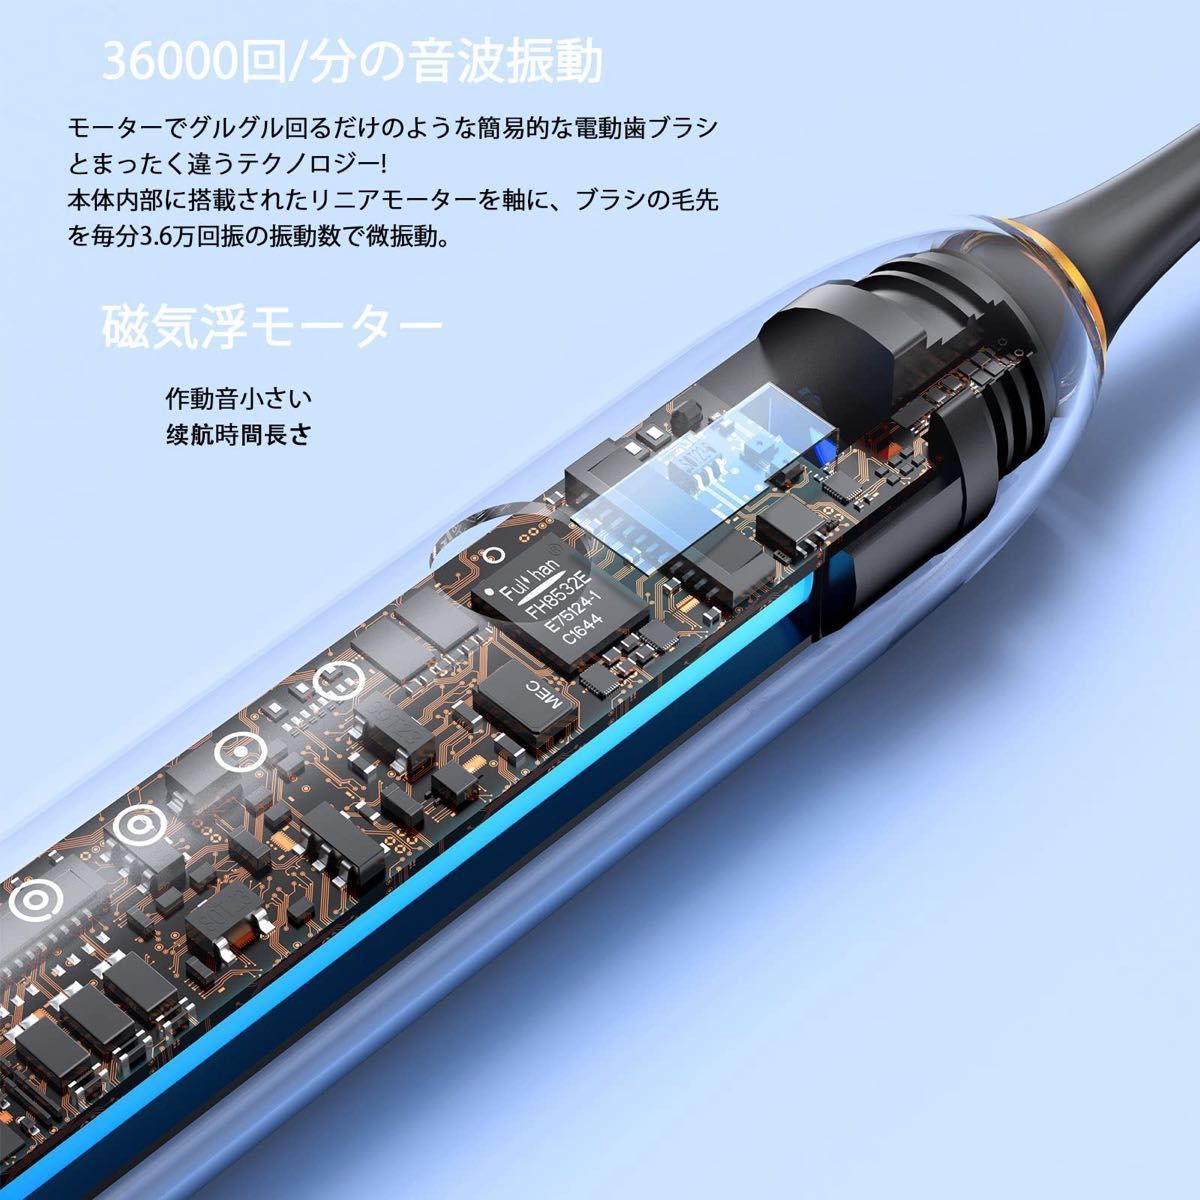 【大特価】電動歯ブラシ 音波歯ブラシ 電動歯磨き オートタイマー機能搭載